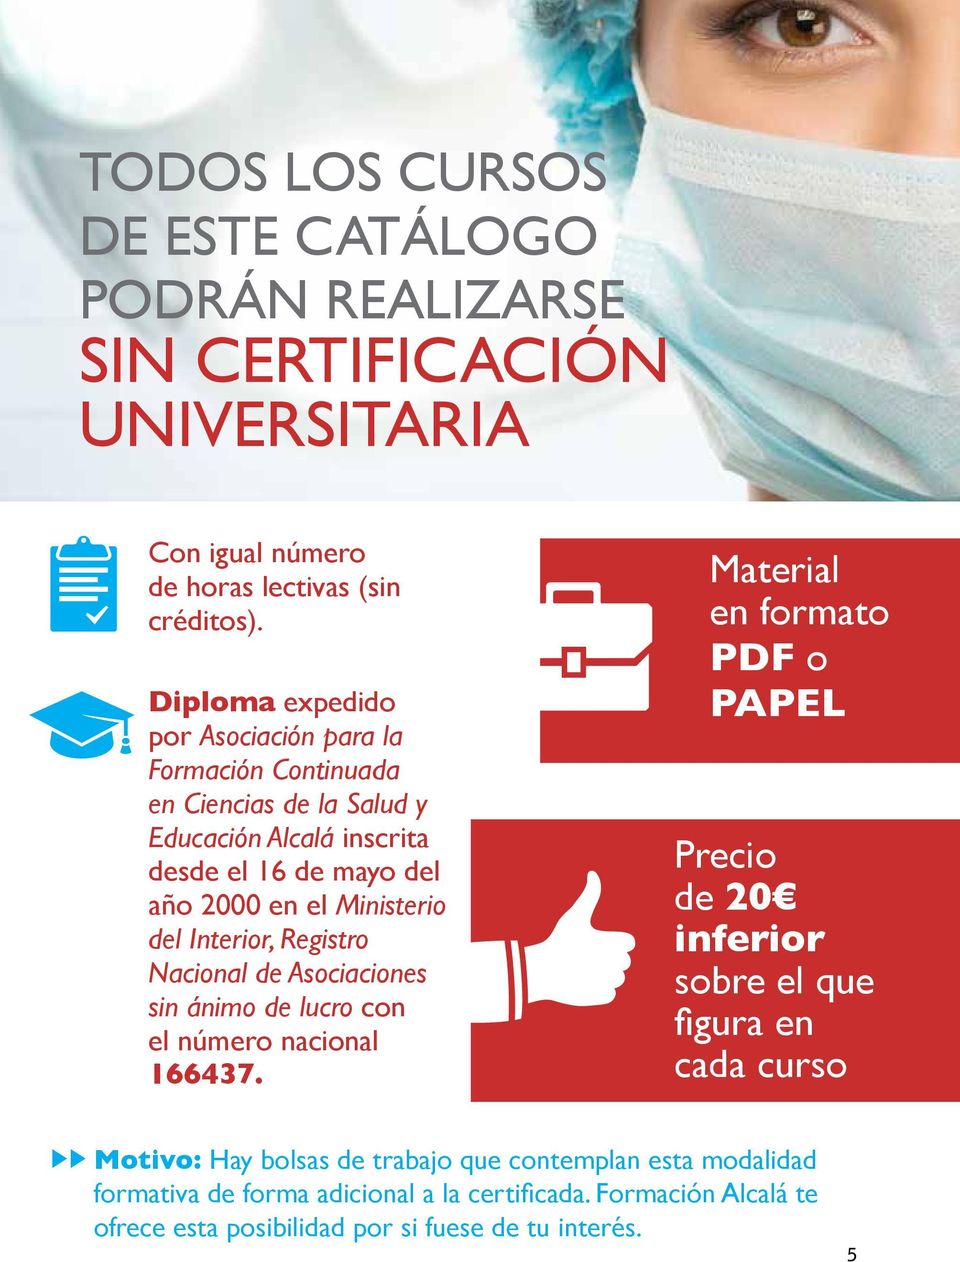 Diploma expedido por Asociación para la Formación Continuada en Ciencias de la Salud y Educación Alcalá inscrita desde el 16 de mayo del año 2000 en el Ministerio del Interior,